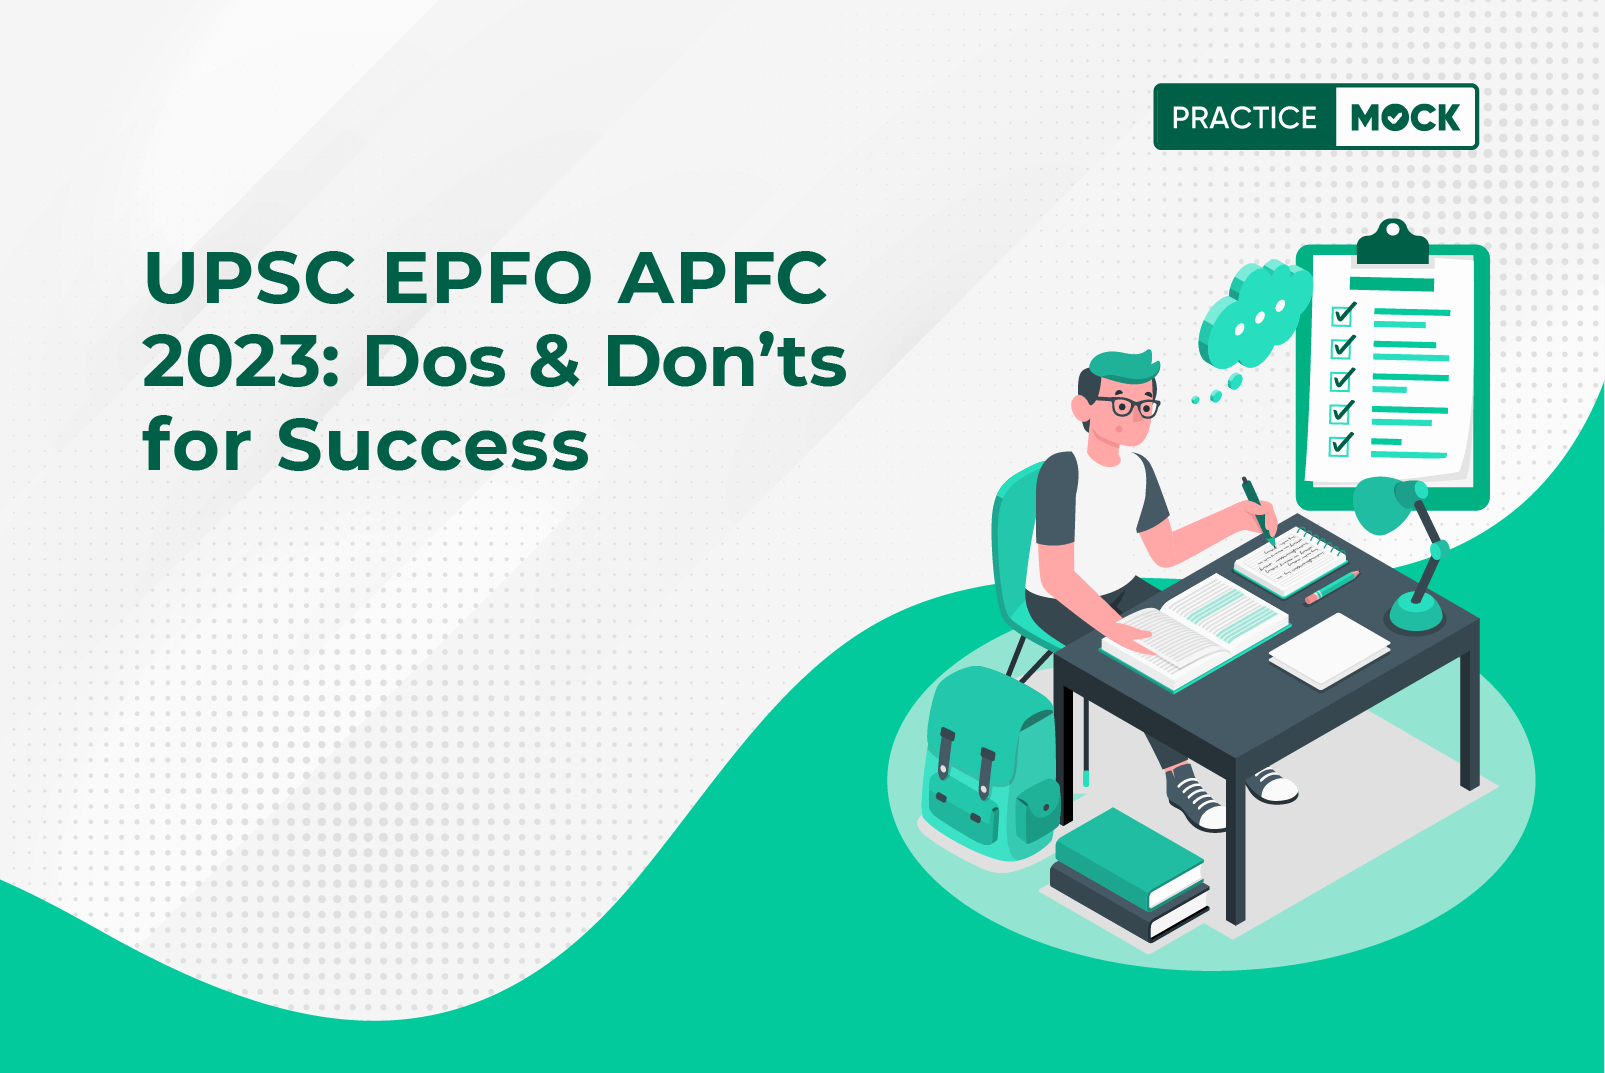 UPSC EPFO APFC 2023-Dos & Don'ts for Success